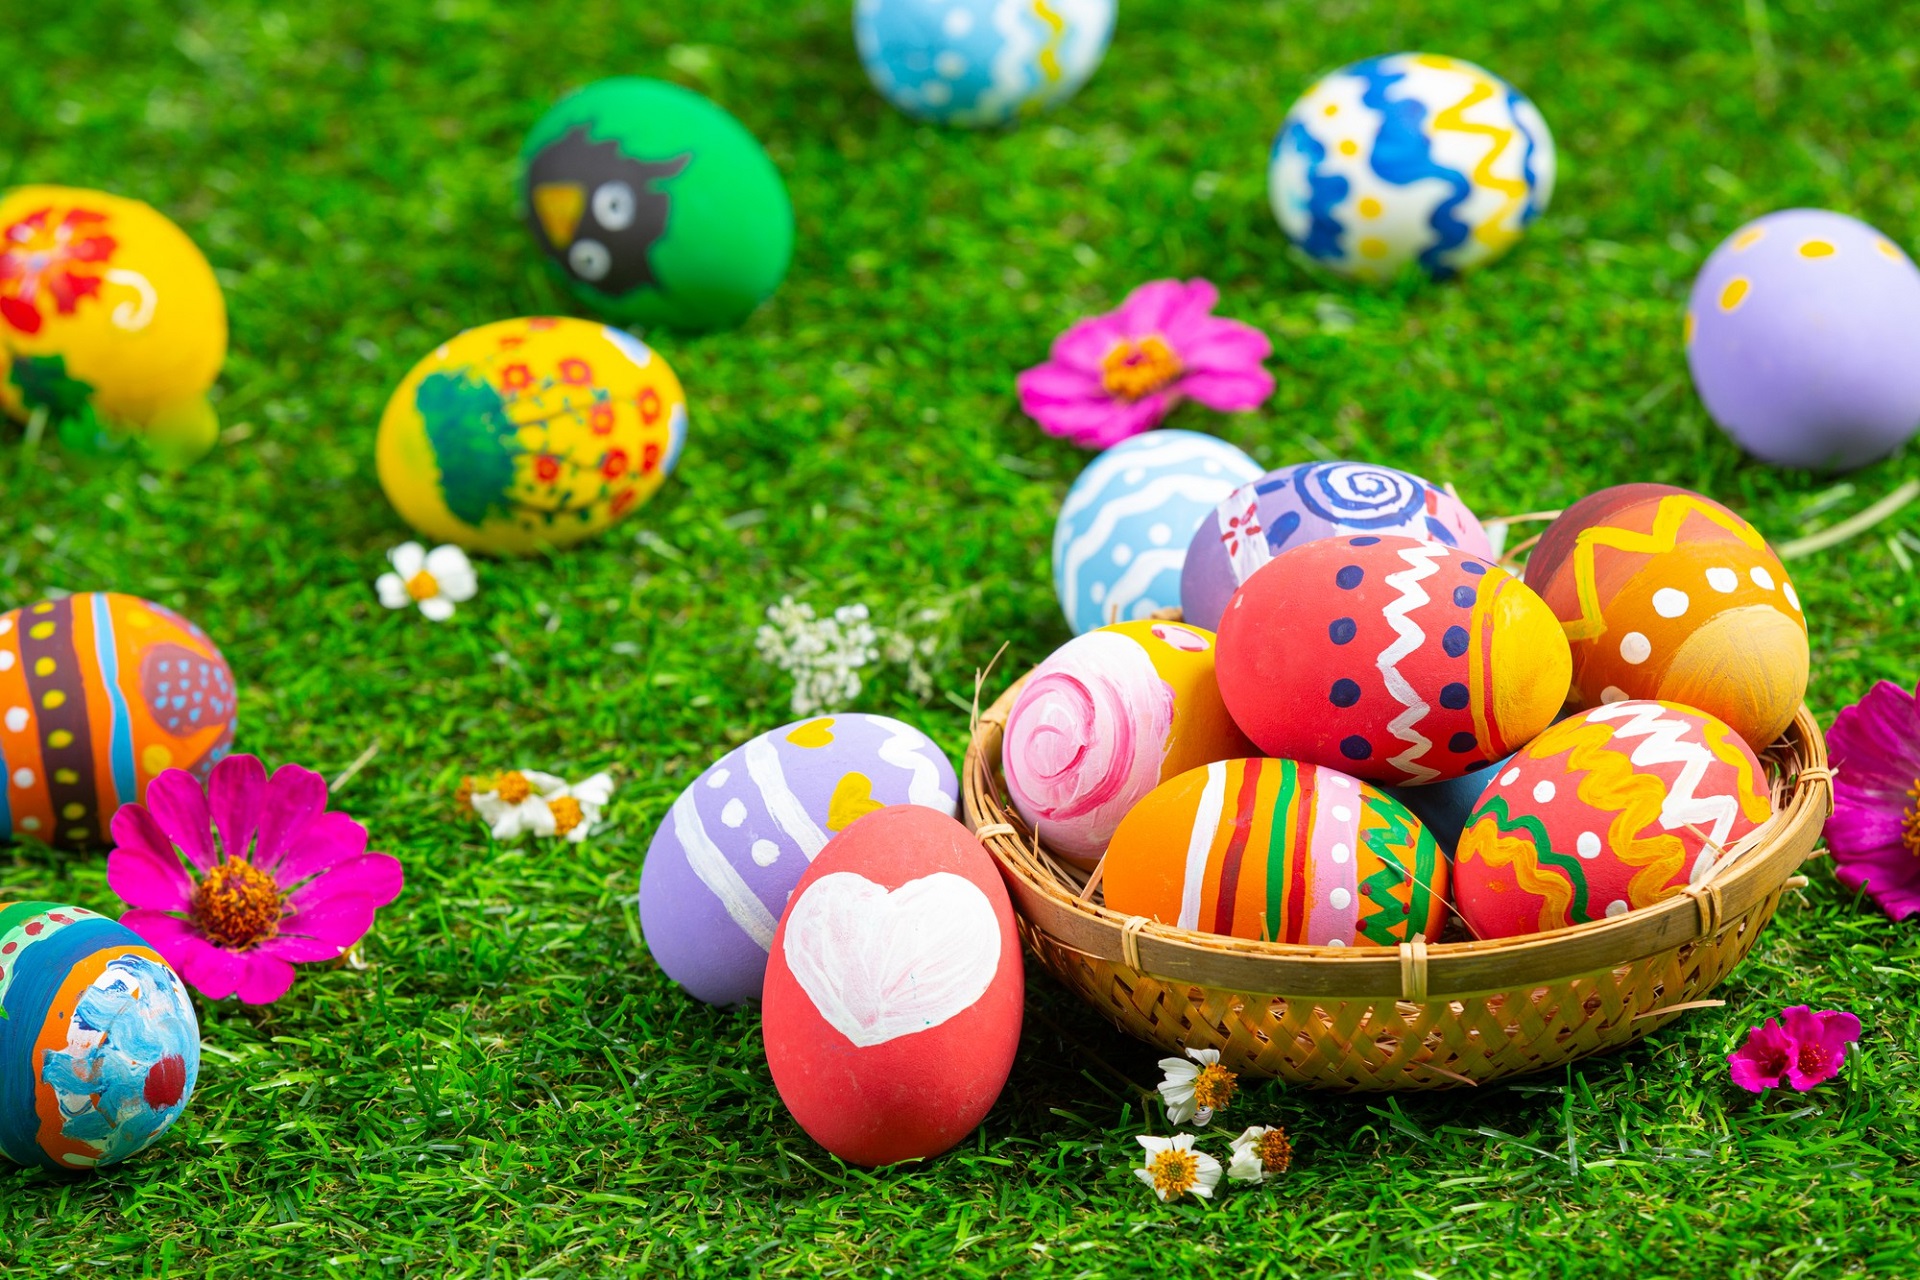 Eggs Hunt - zabawa wielkanocna polegająca na szukaniu jajek w ogrodzie